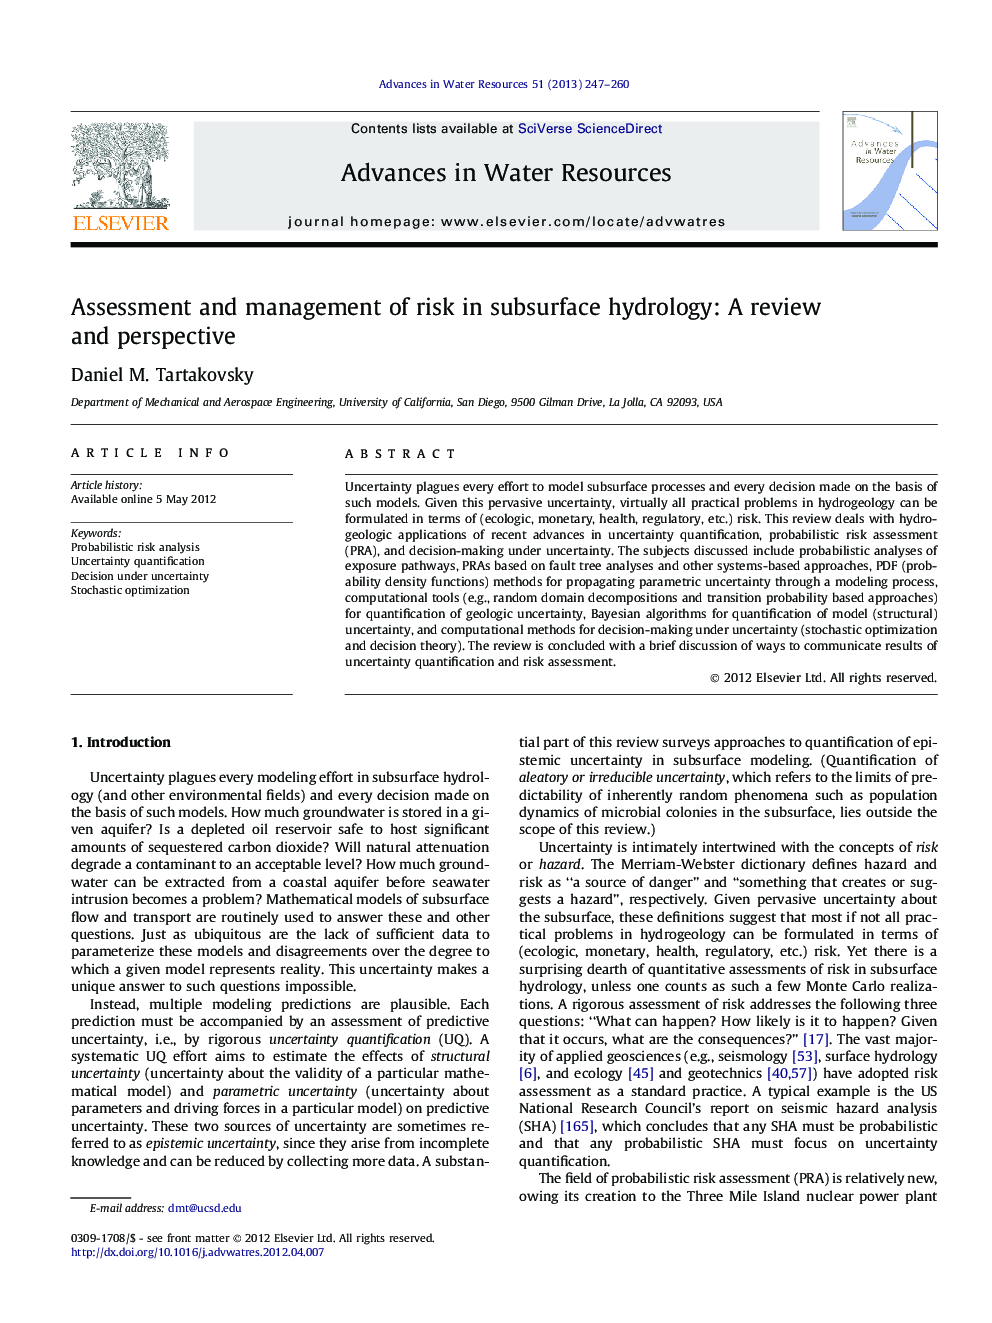 ارزیابی و مدیریت ریسک در هیدرولوژی زیرزمینی: یک بررسی و دیدگاه 